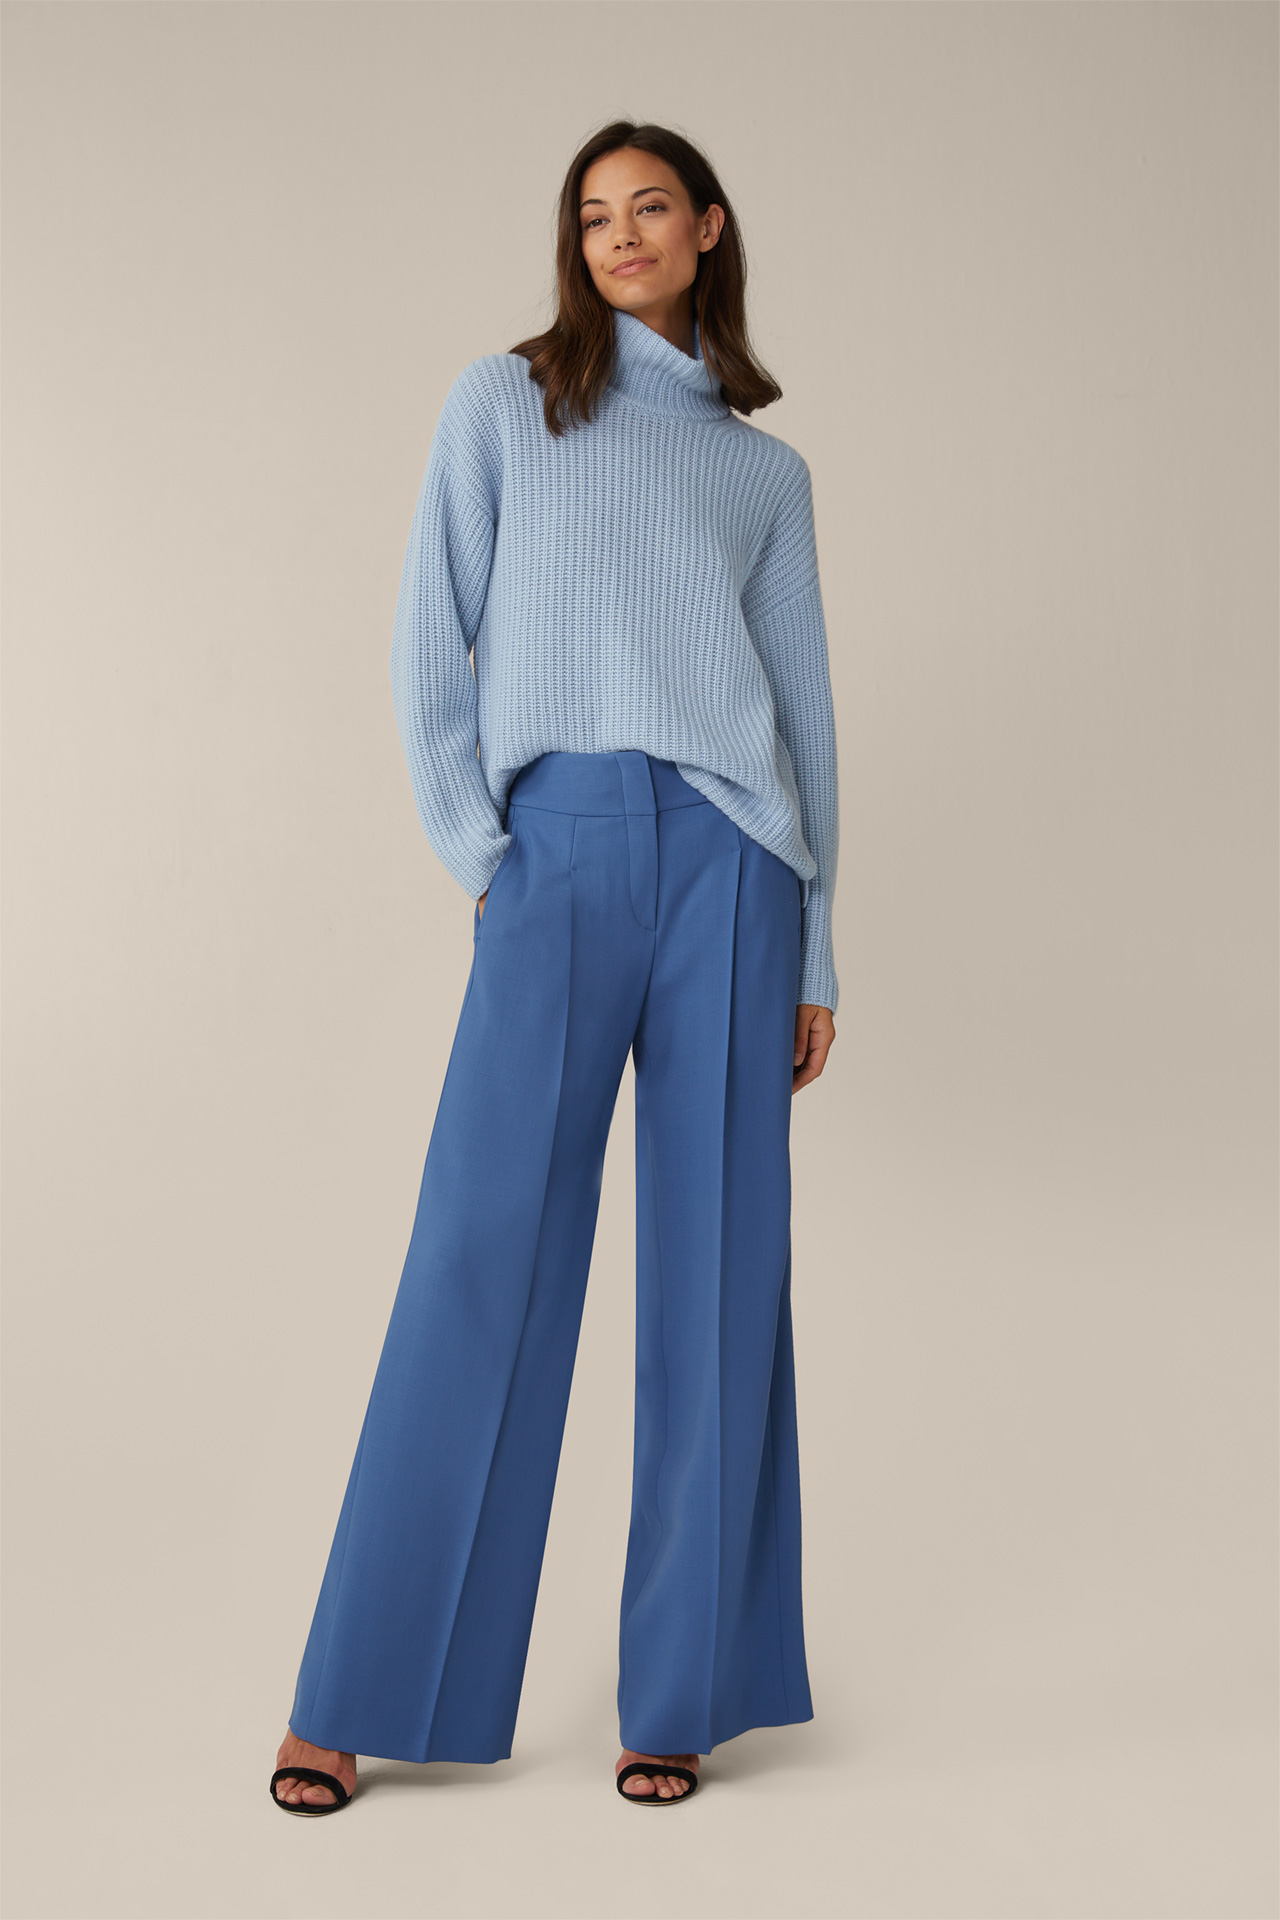 Cashmere-Pullover mit Stehkragen in Blau